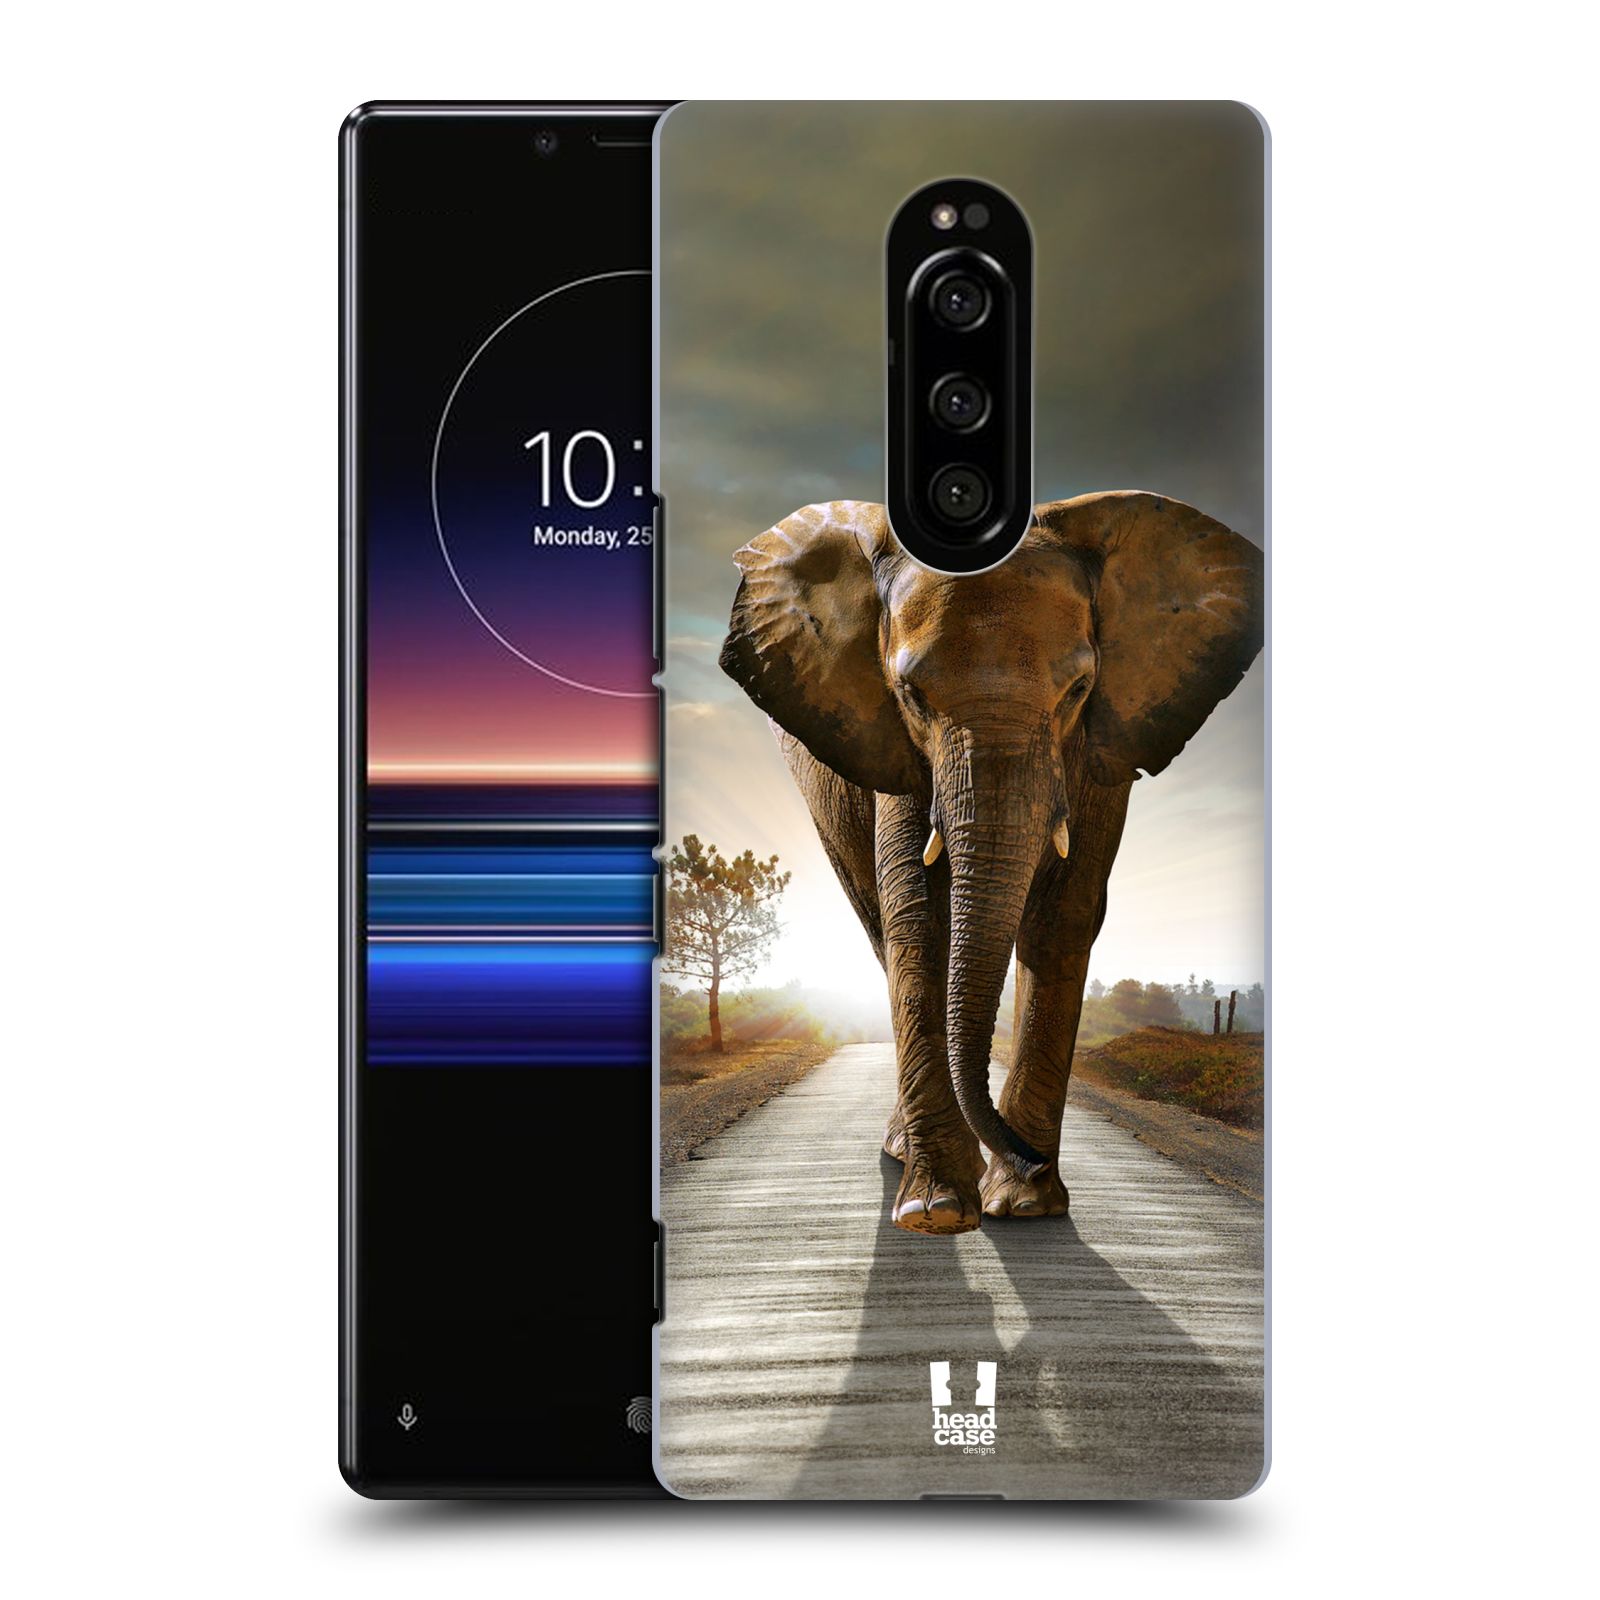 Zadní obal pro mobil Sony Xperia 1 - HEAD CASE - Svět zvířat kráčející slon